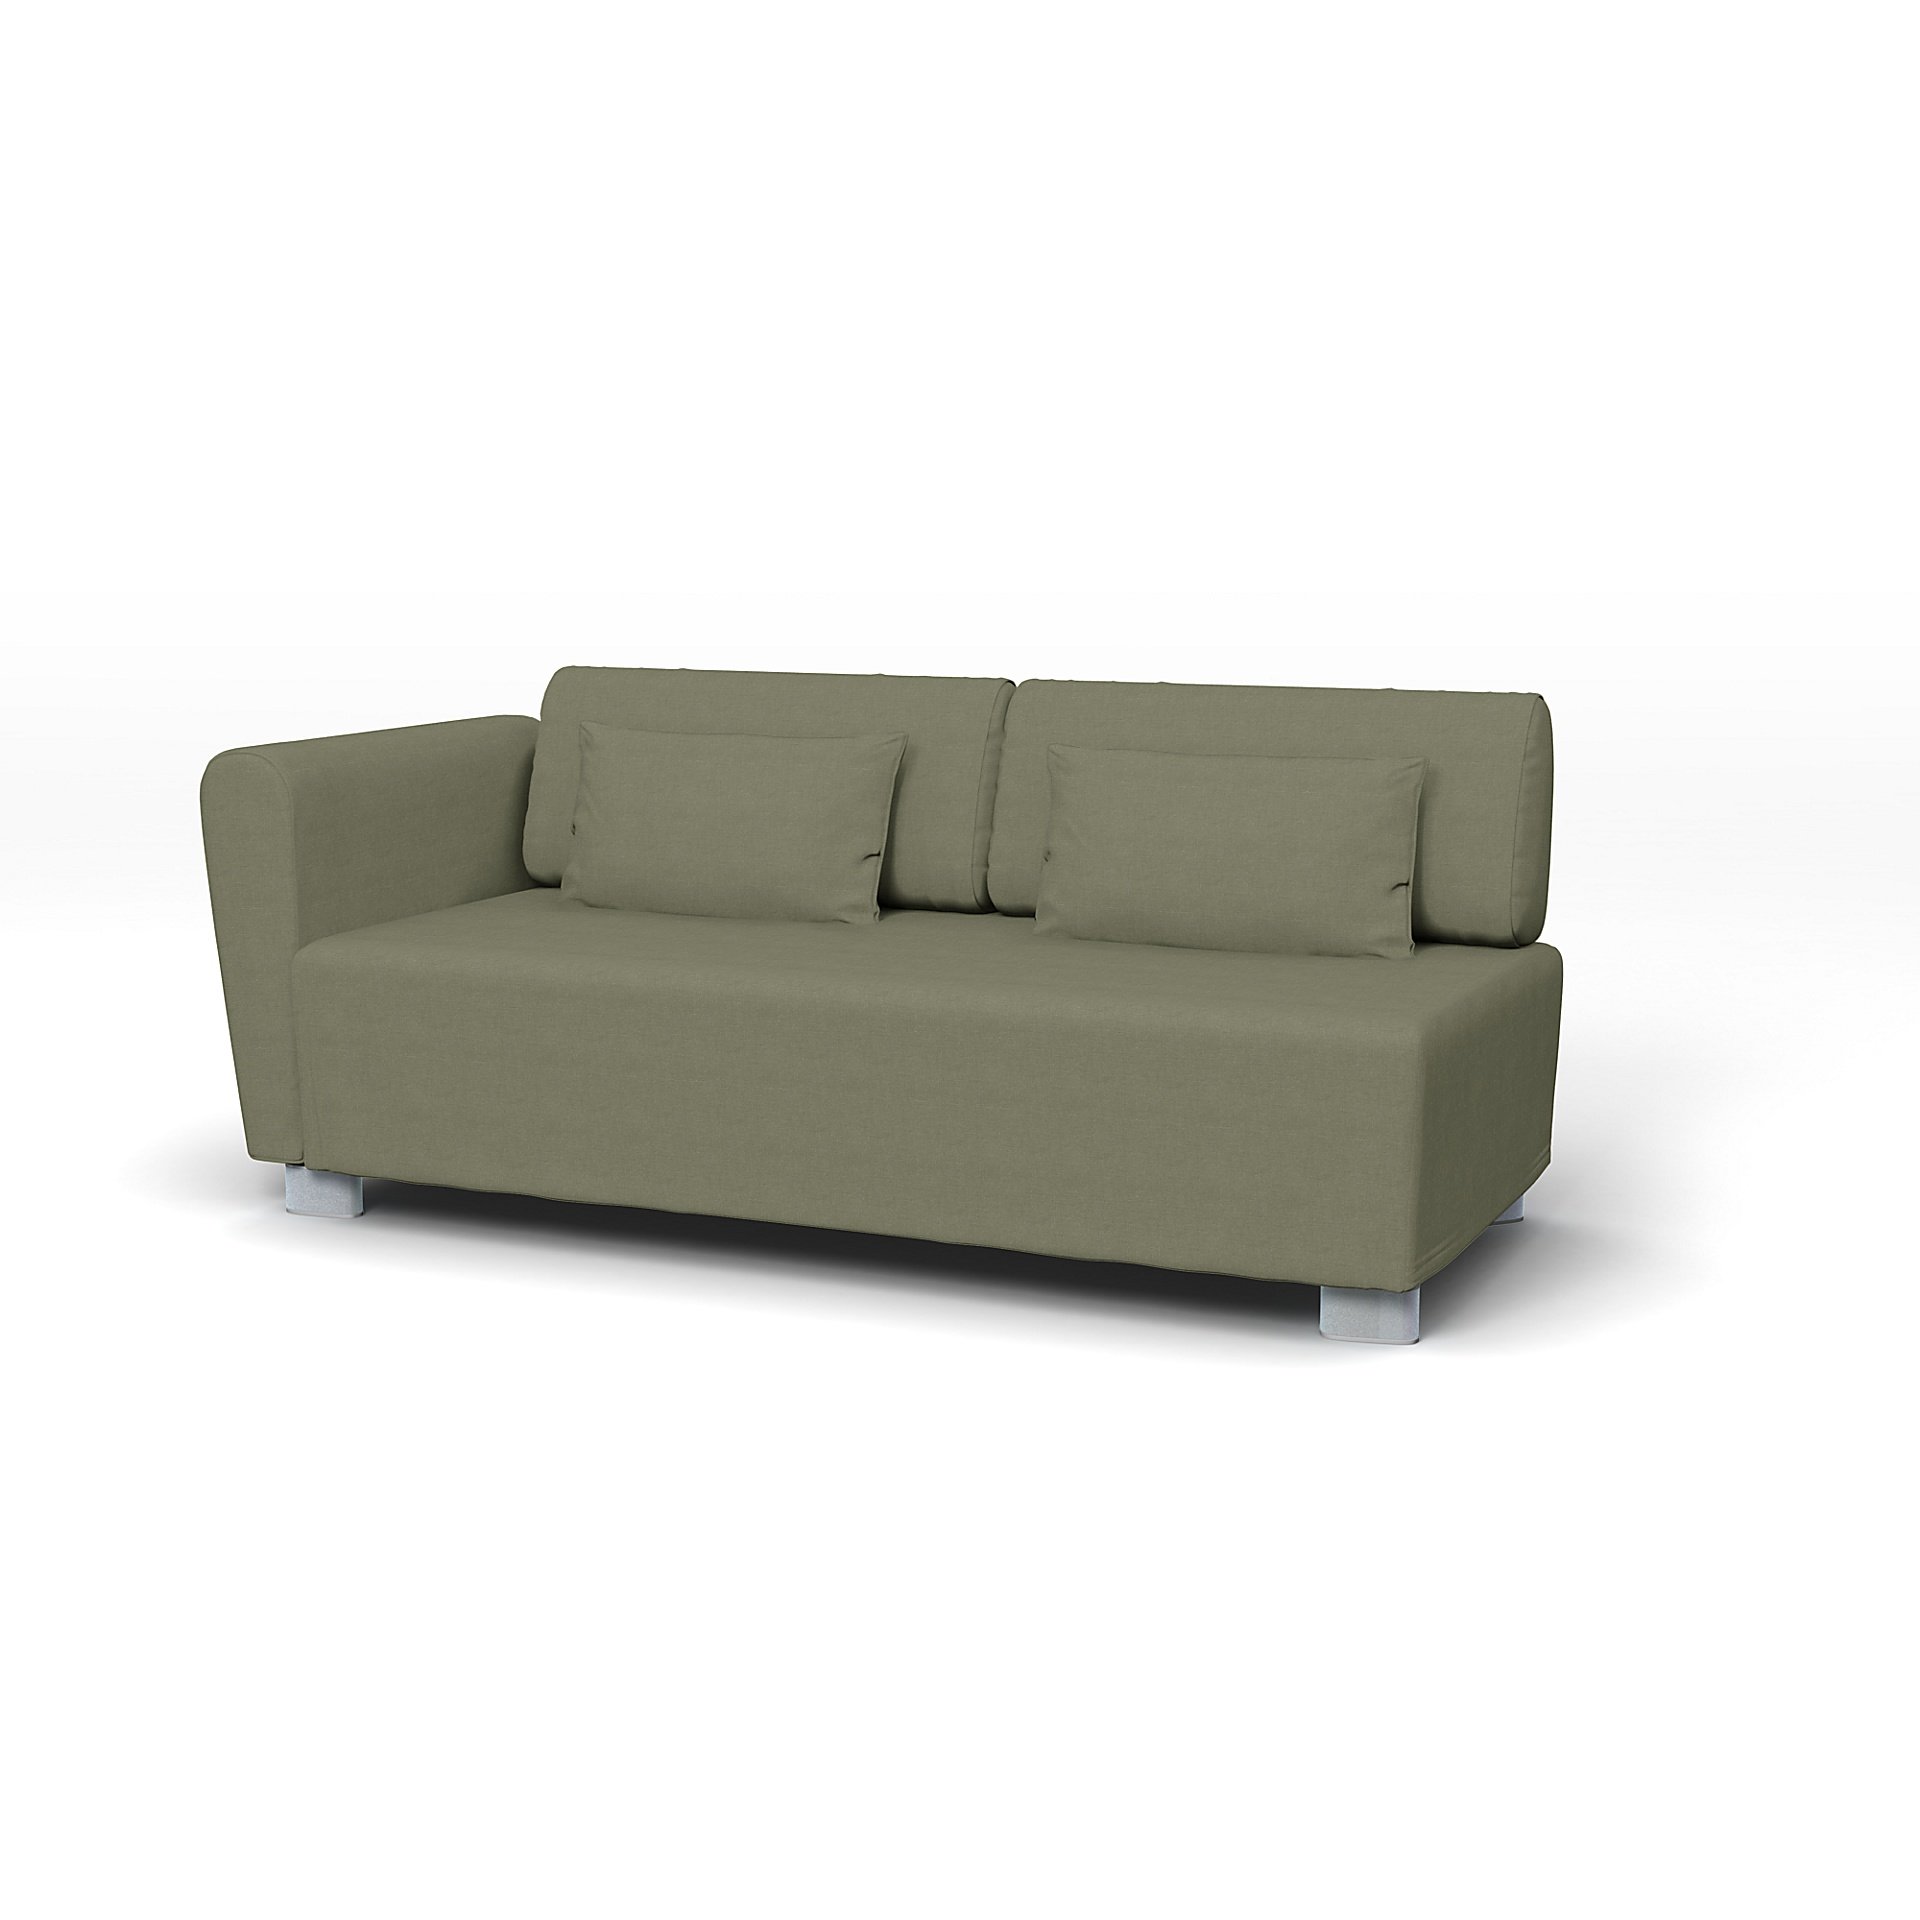 IKEA - Mysinge 2 Seater Sofa with Armrest Cover, Sage, Linen - Bemz